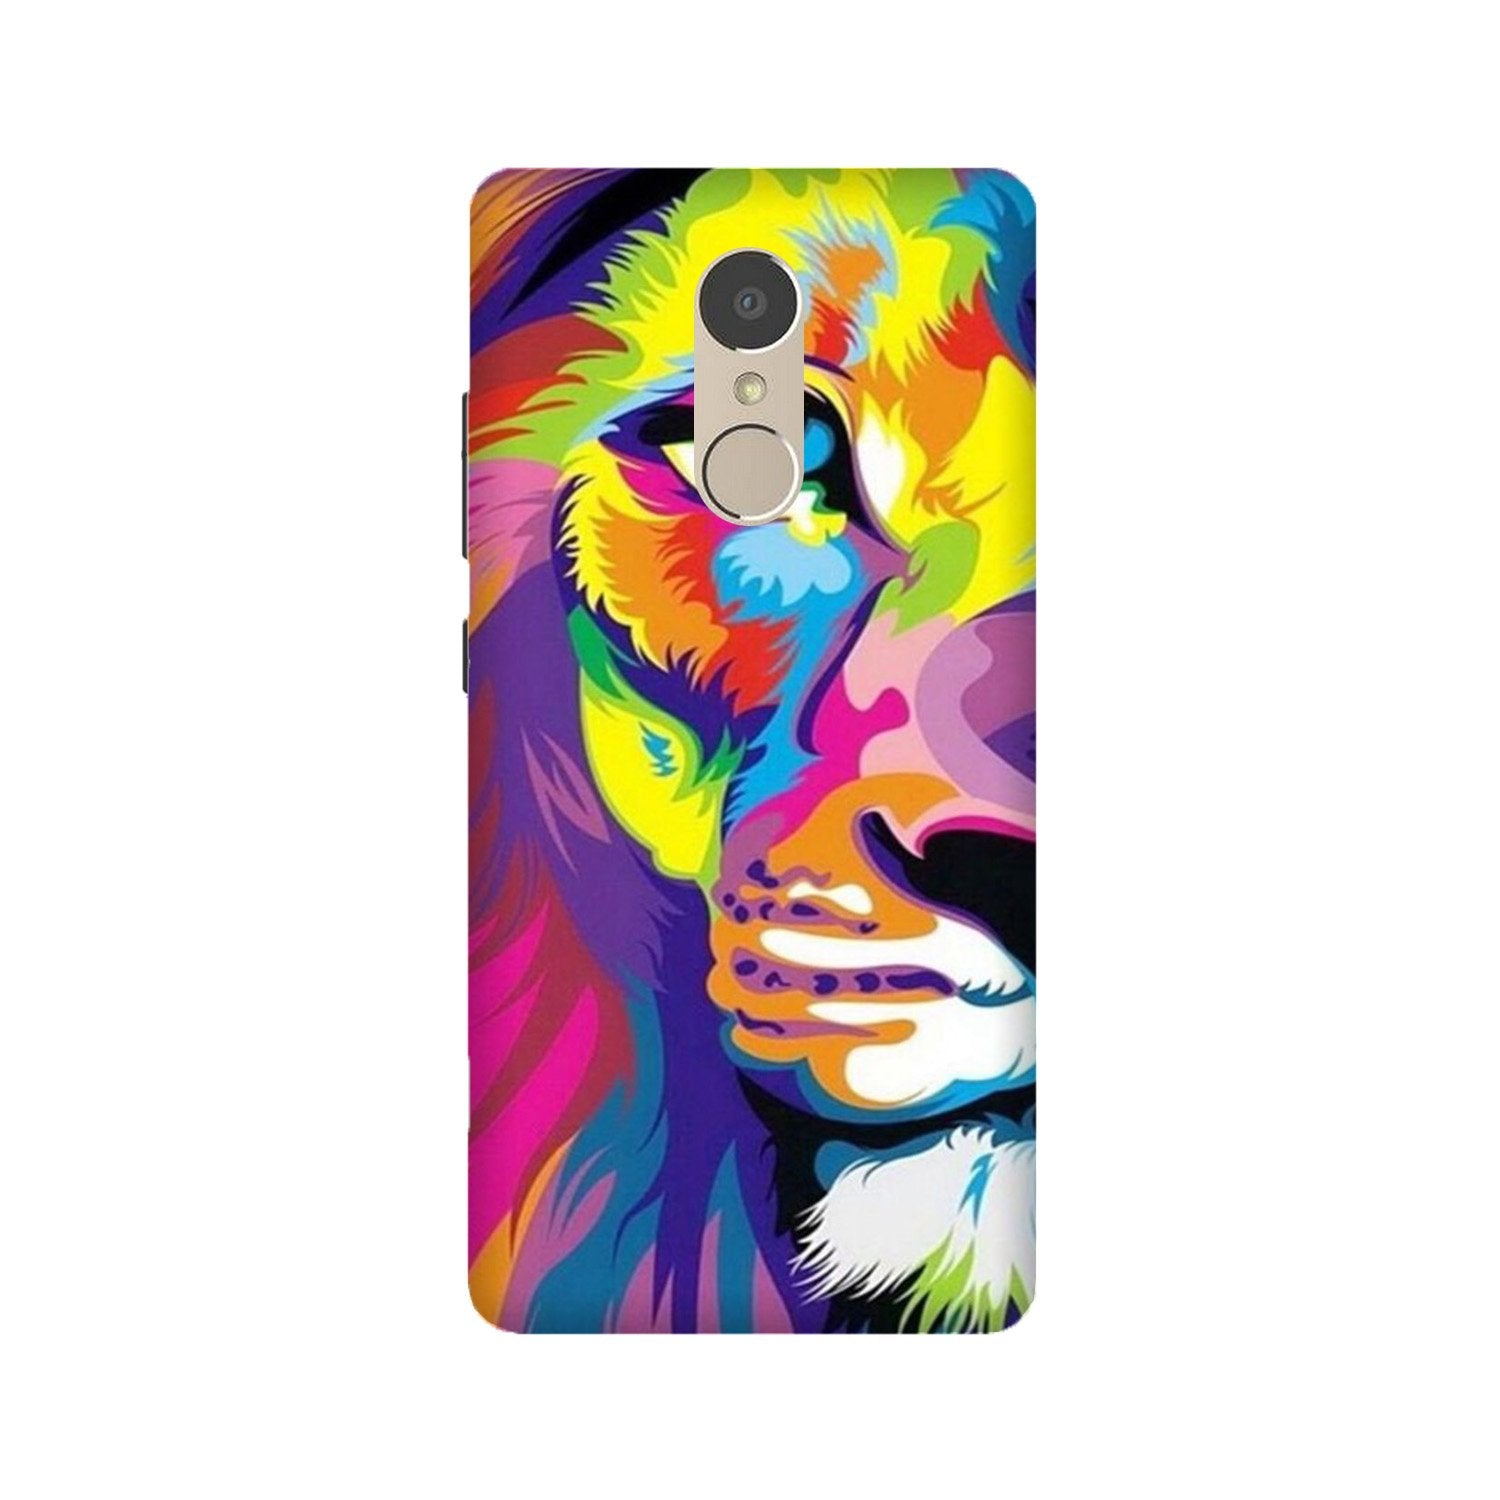 Colorful Lion Case for Lenovo K6 Note(Design - 110)